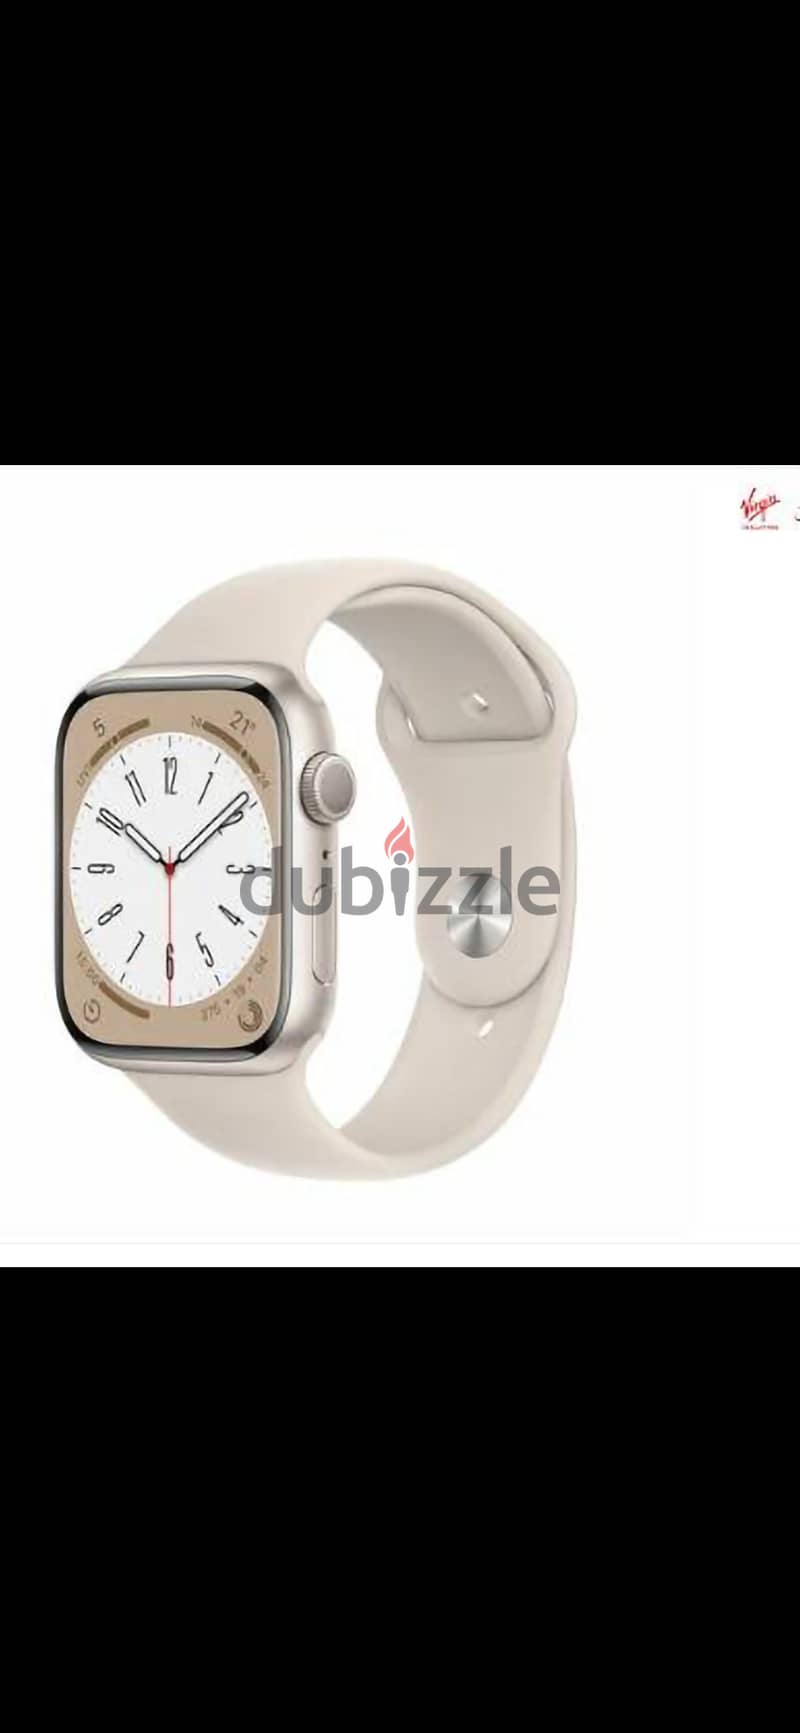 Apple watch 2